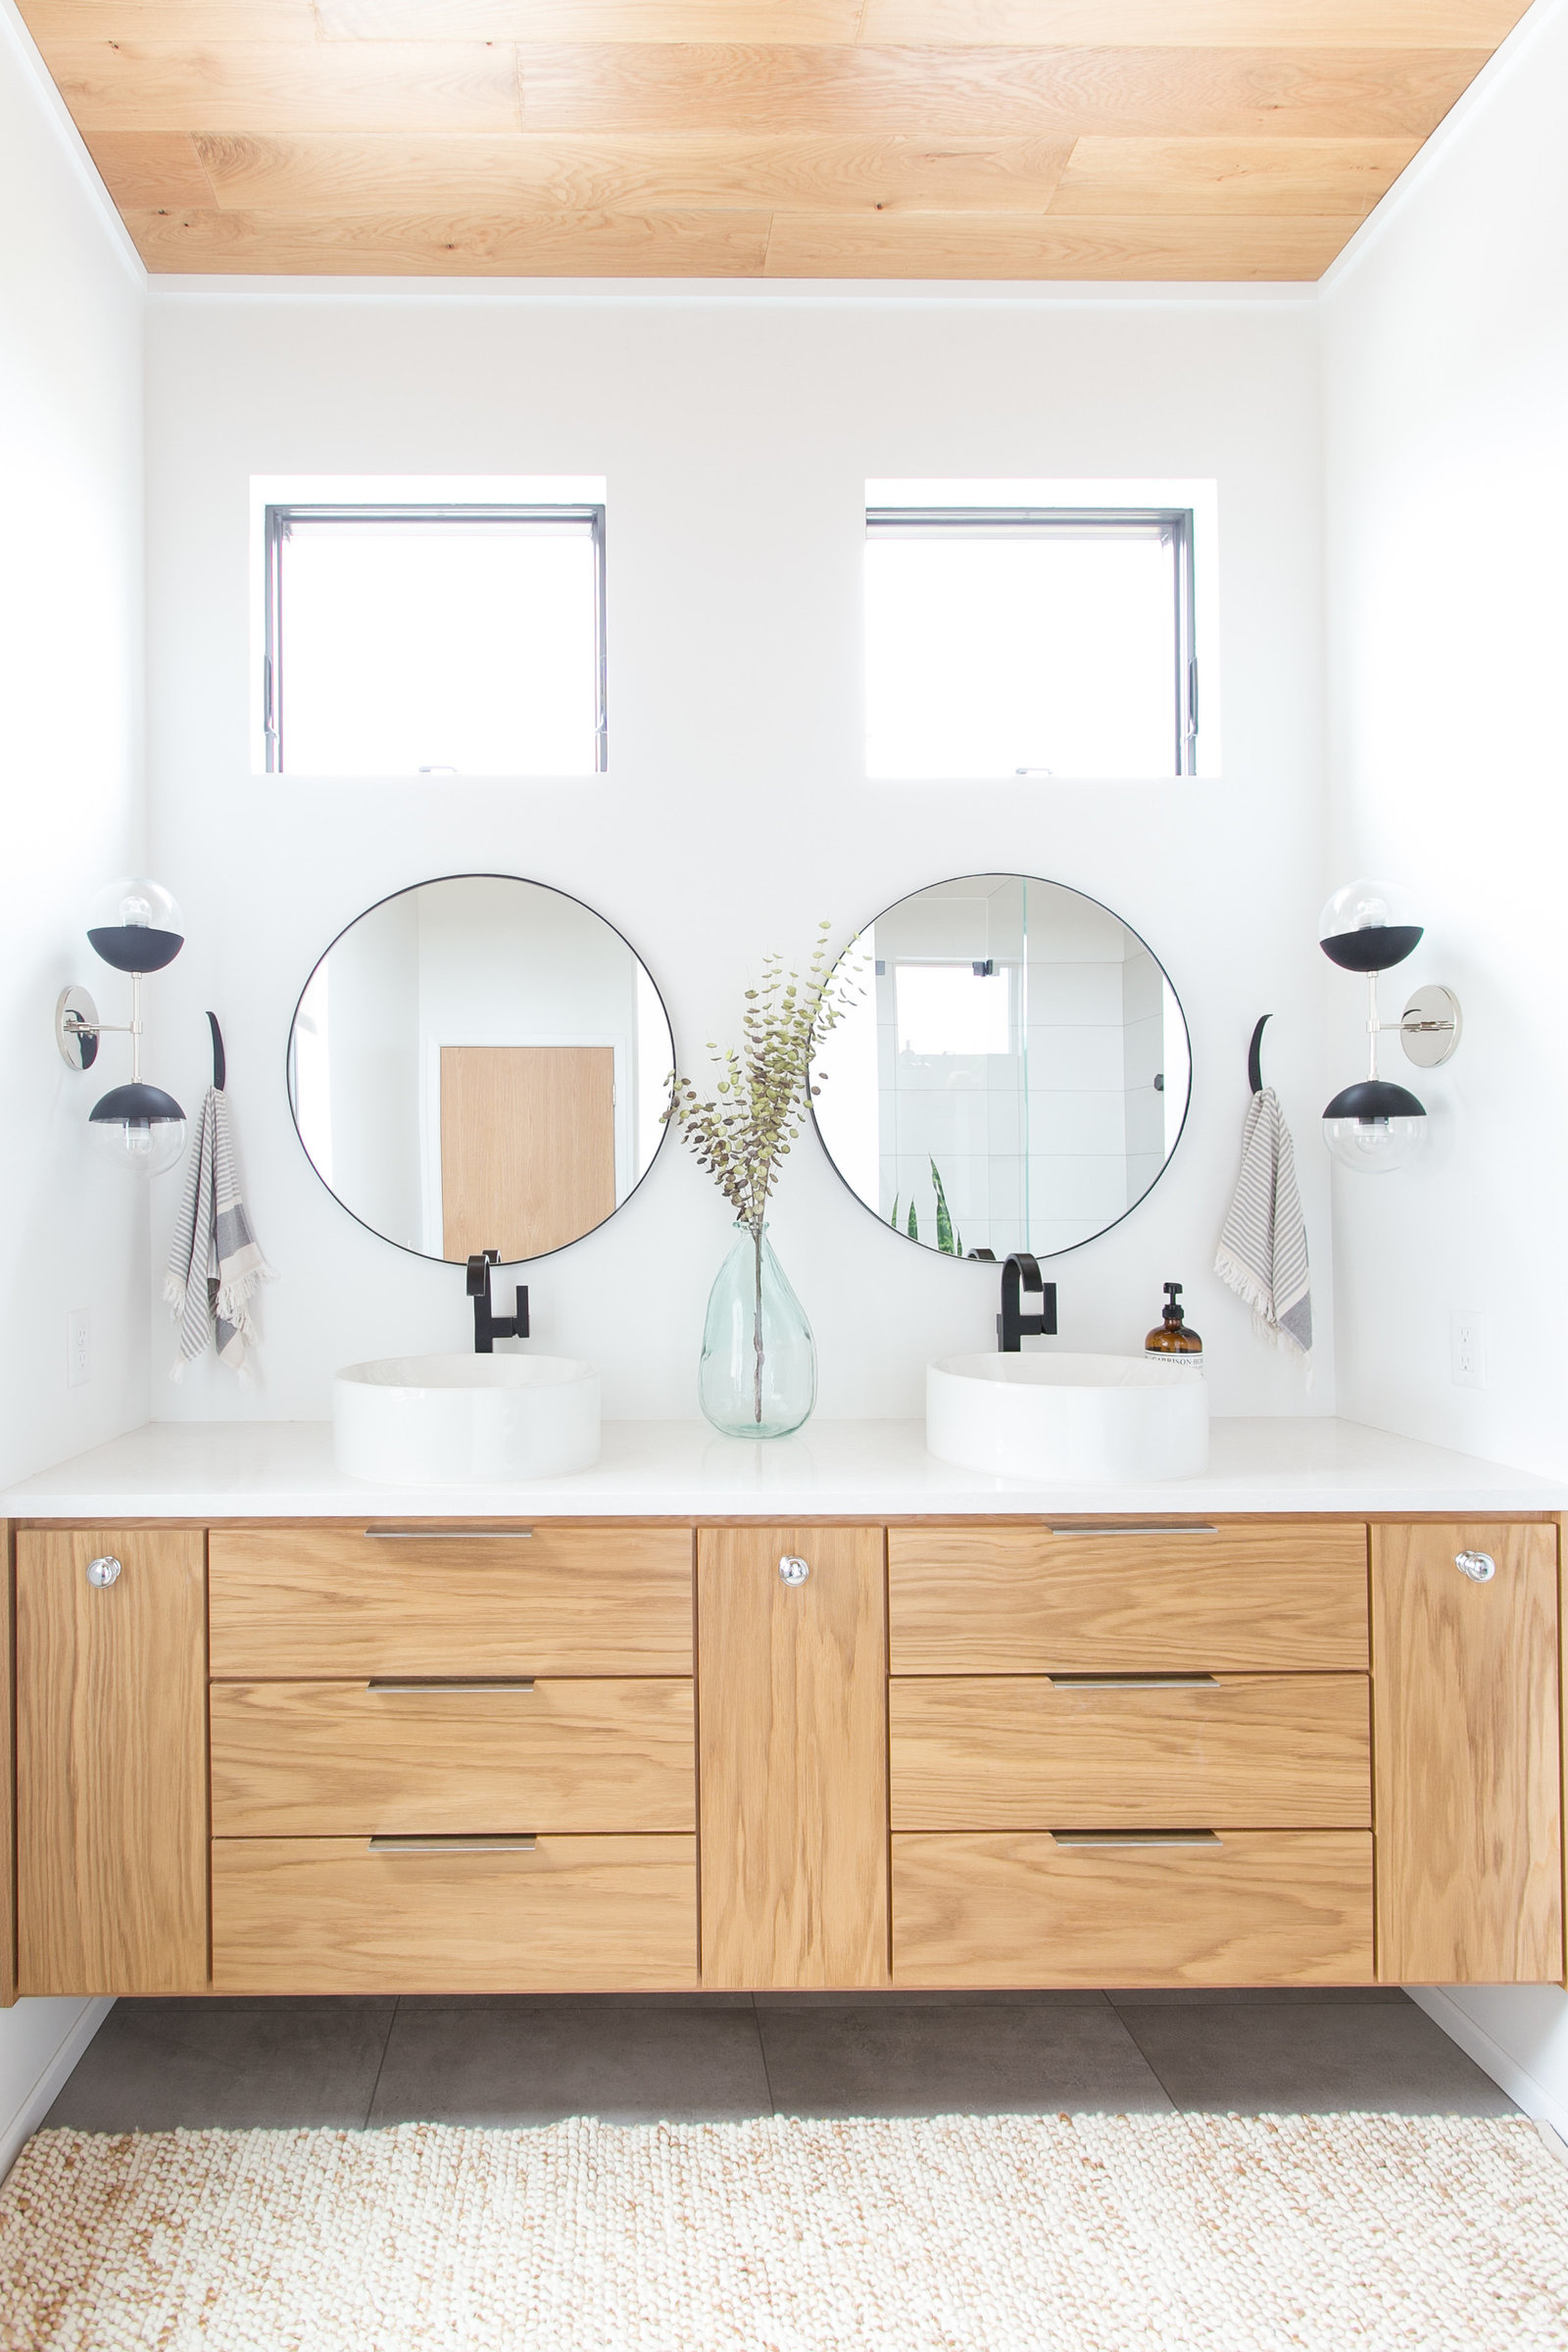 Modern master bathroom design with vessel sinks, floating shelves and vanity